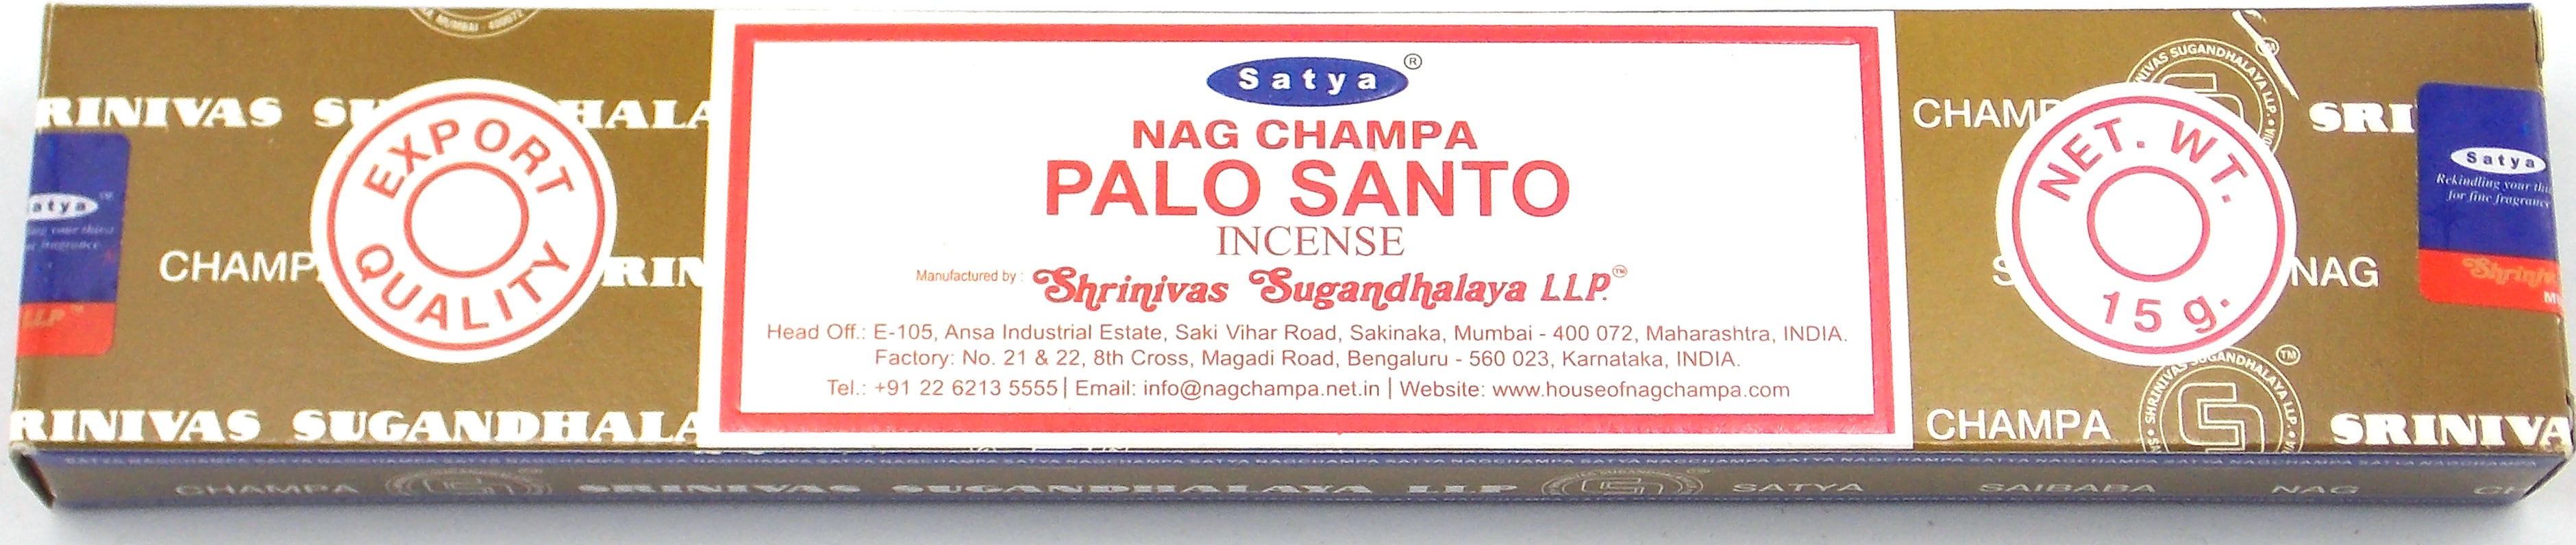 Incienso marca Satya fragancia Palo Santo